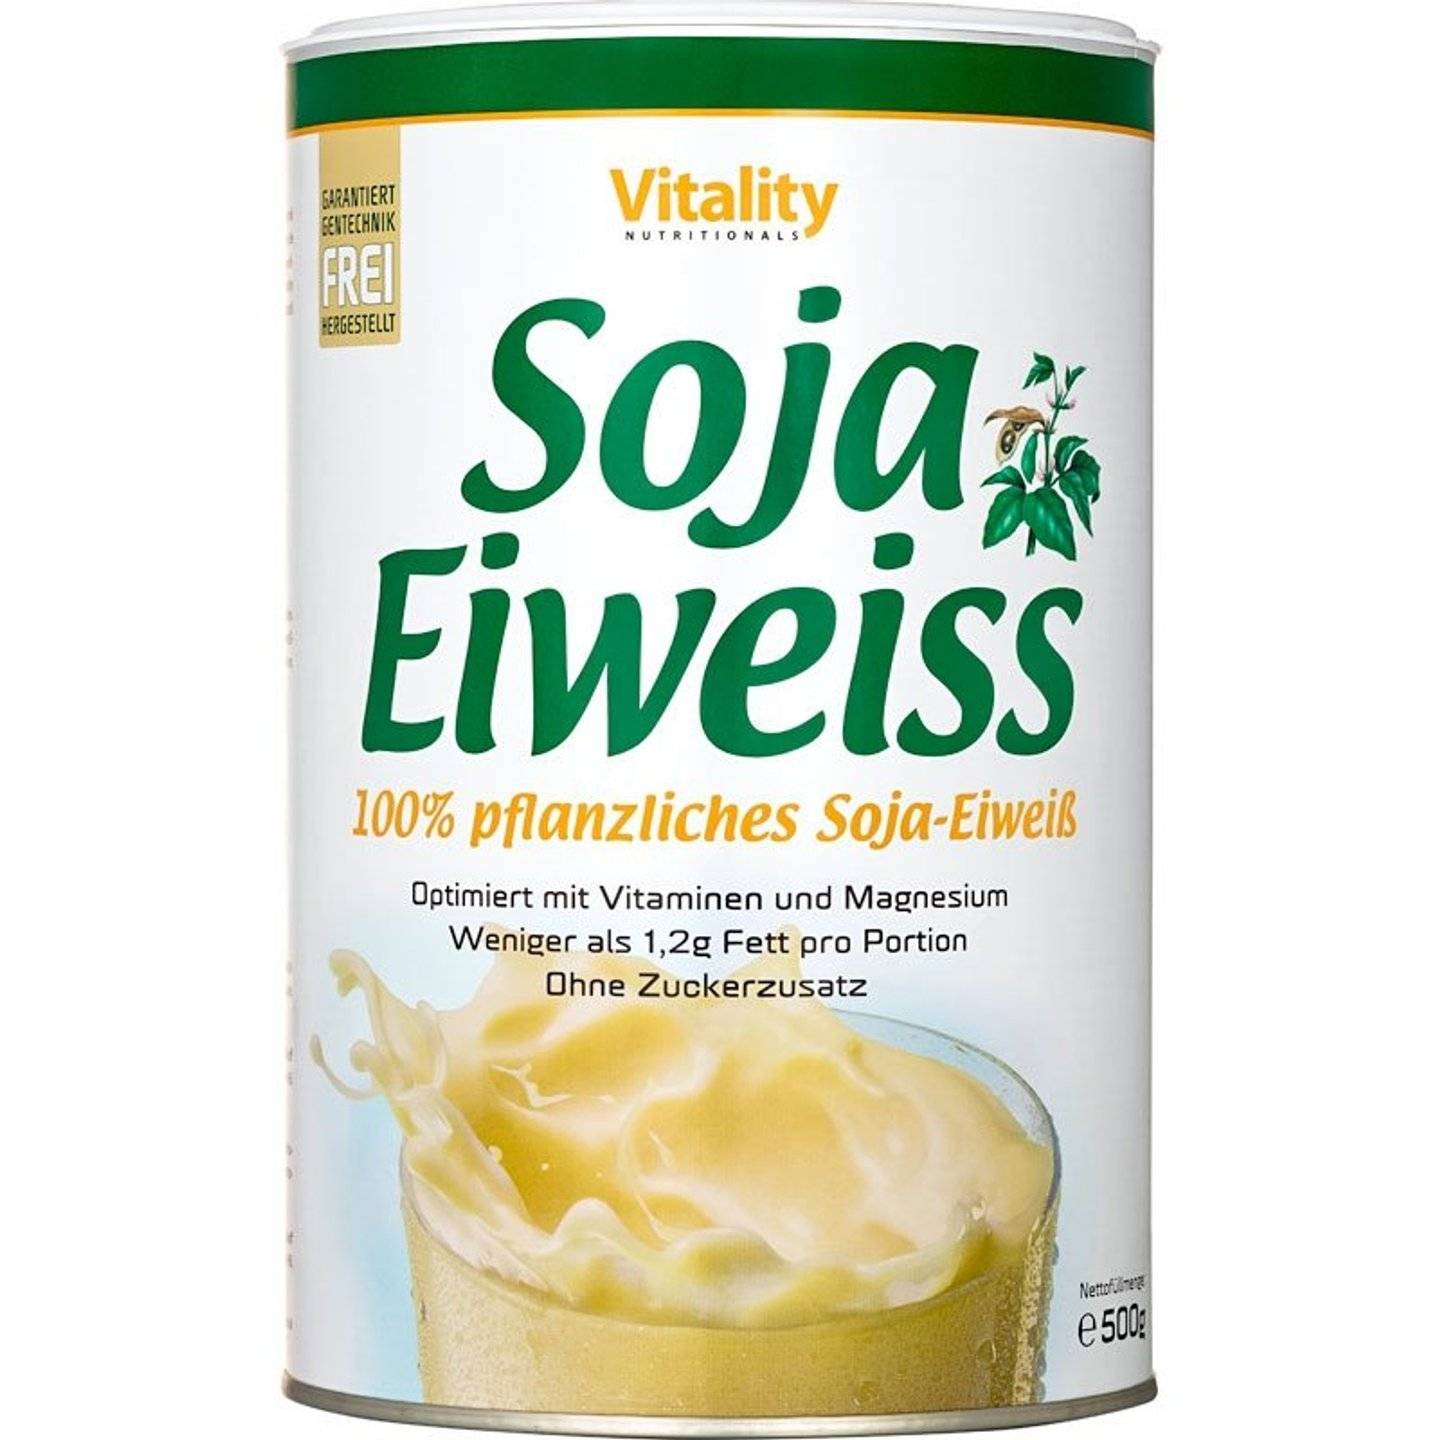 Vitalityballs - 60% Protein Soja Crispies Natur 500 g ohne Zucker-Zusatz -  Eiweiß Soya Sojacrispies ideal als Topping für Müsli, Salate und